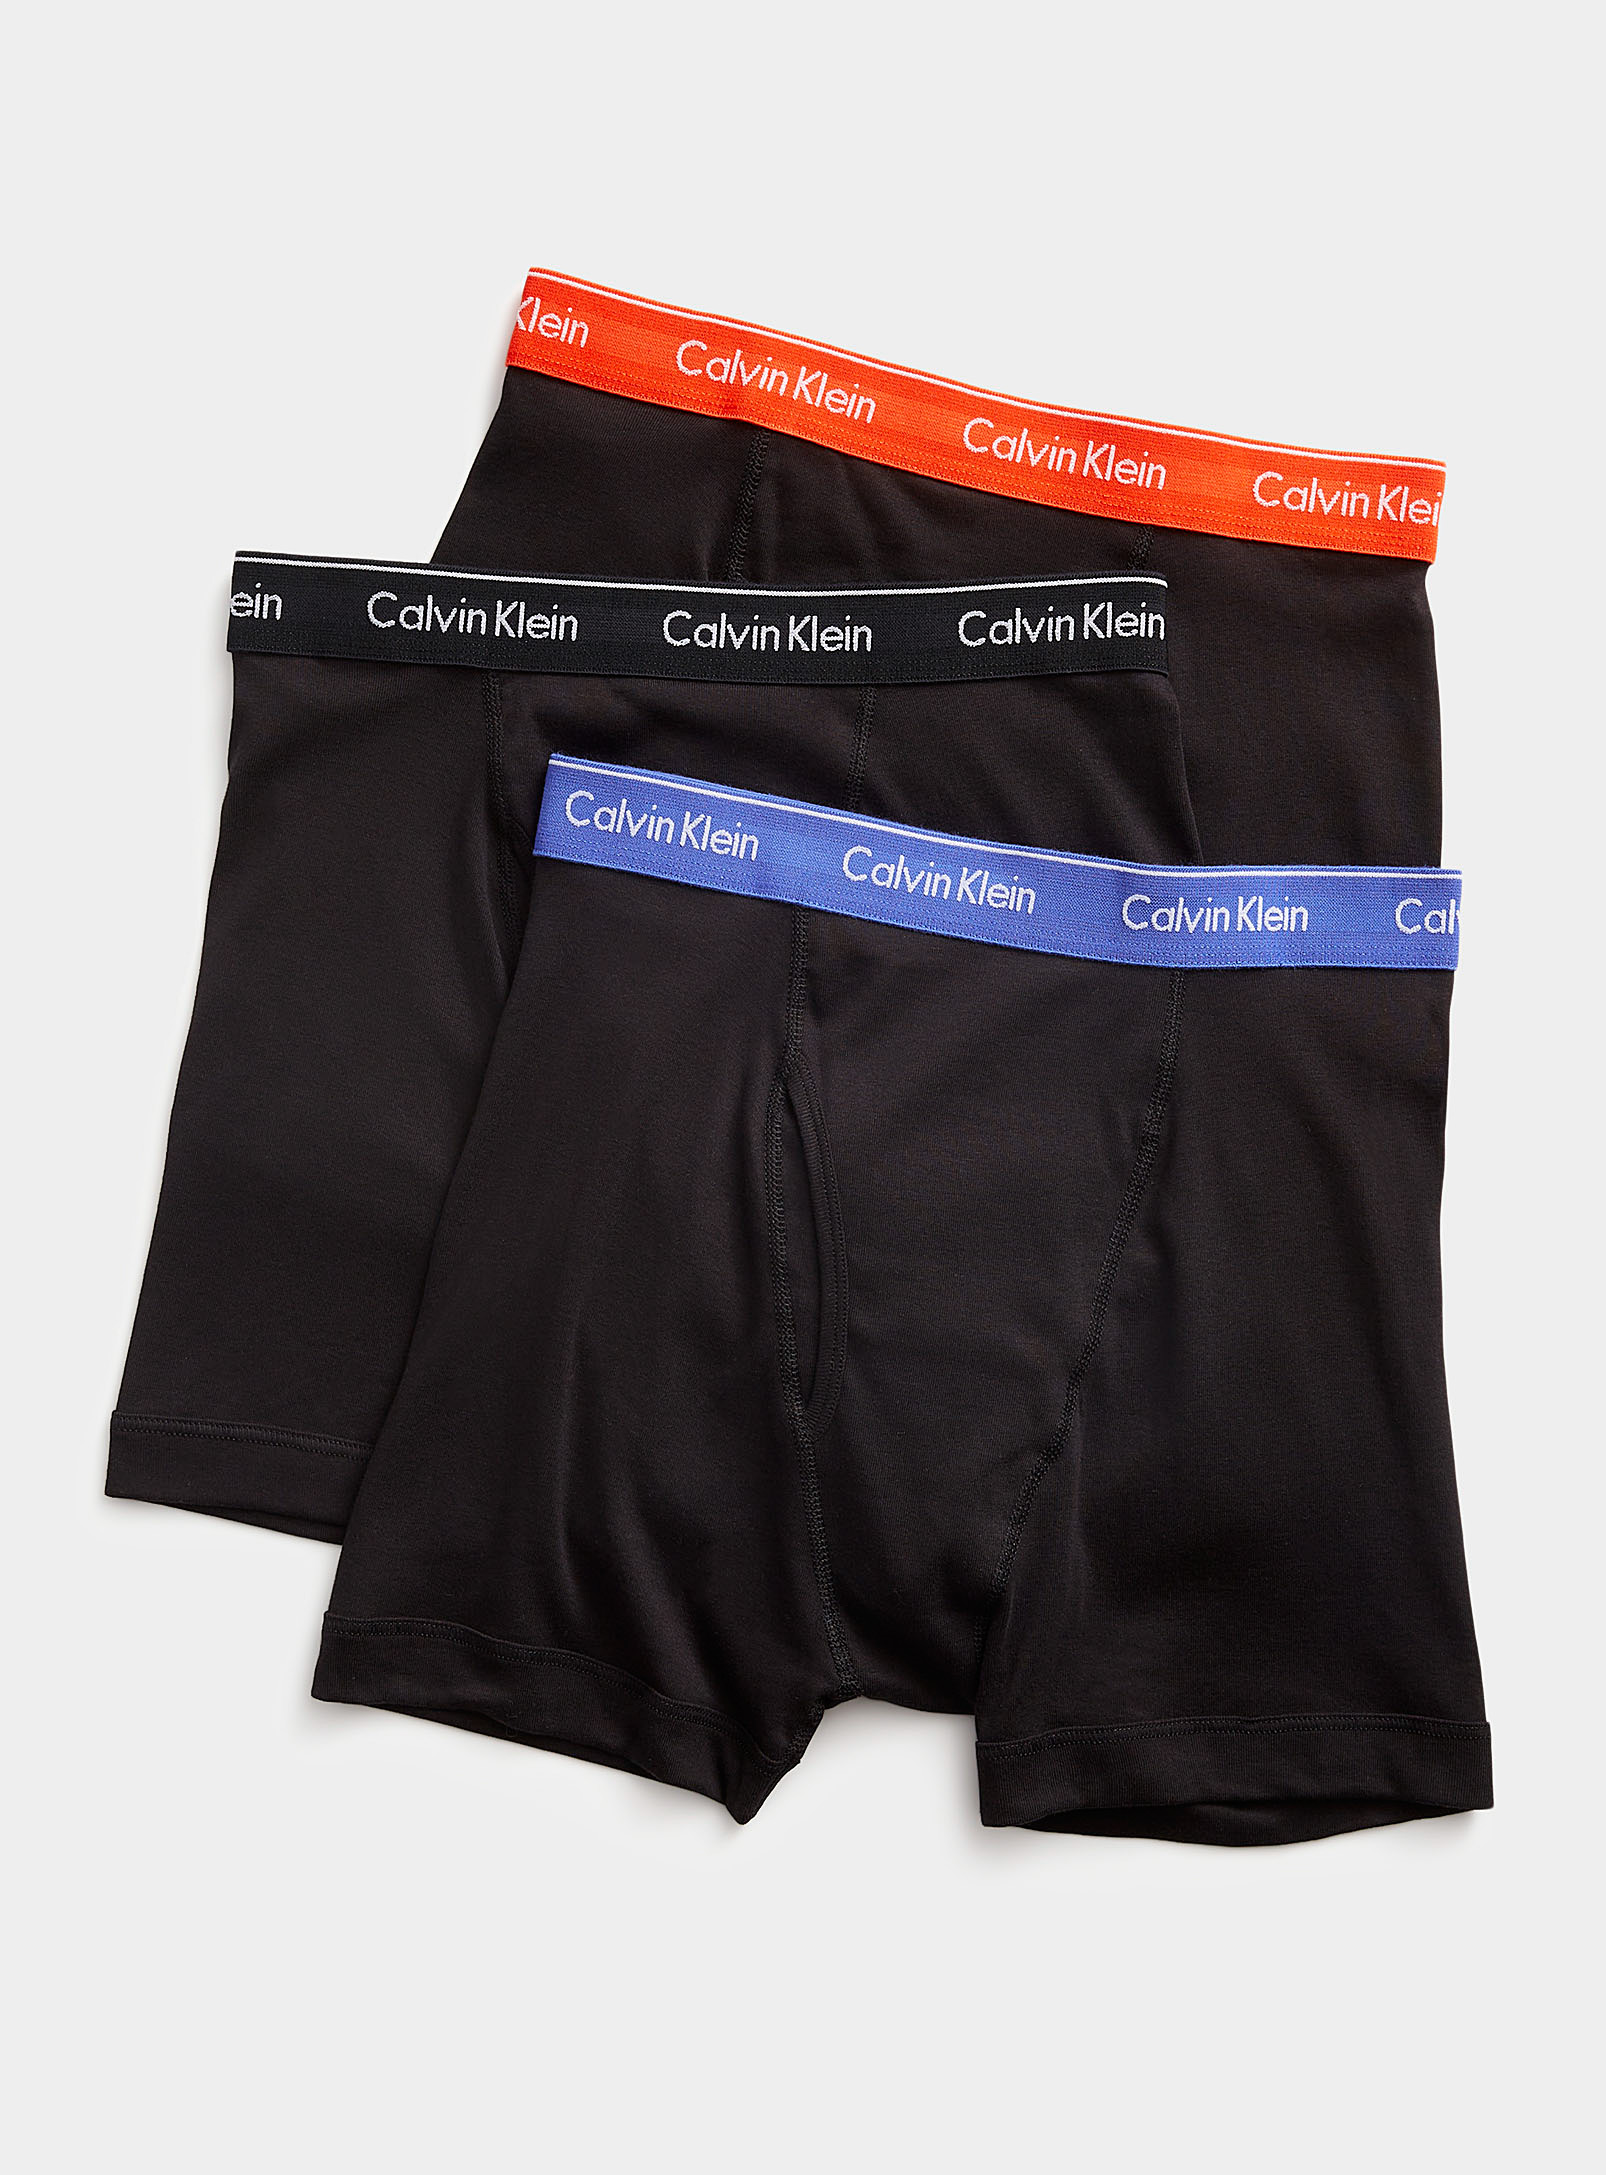 Calvin Klein - Men's Pure cotton black boxer briefs 3-pack